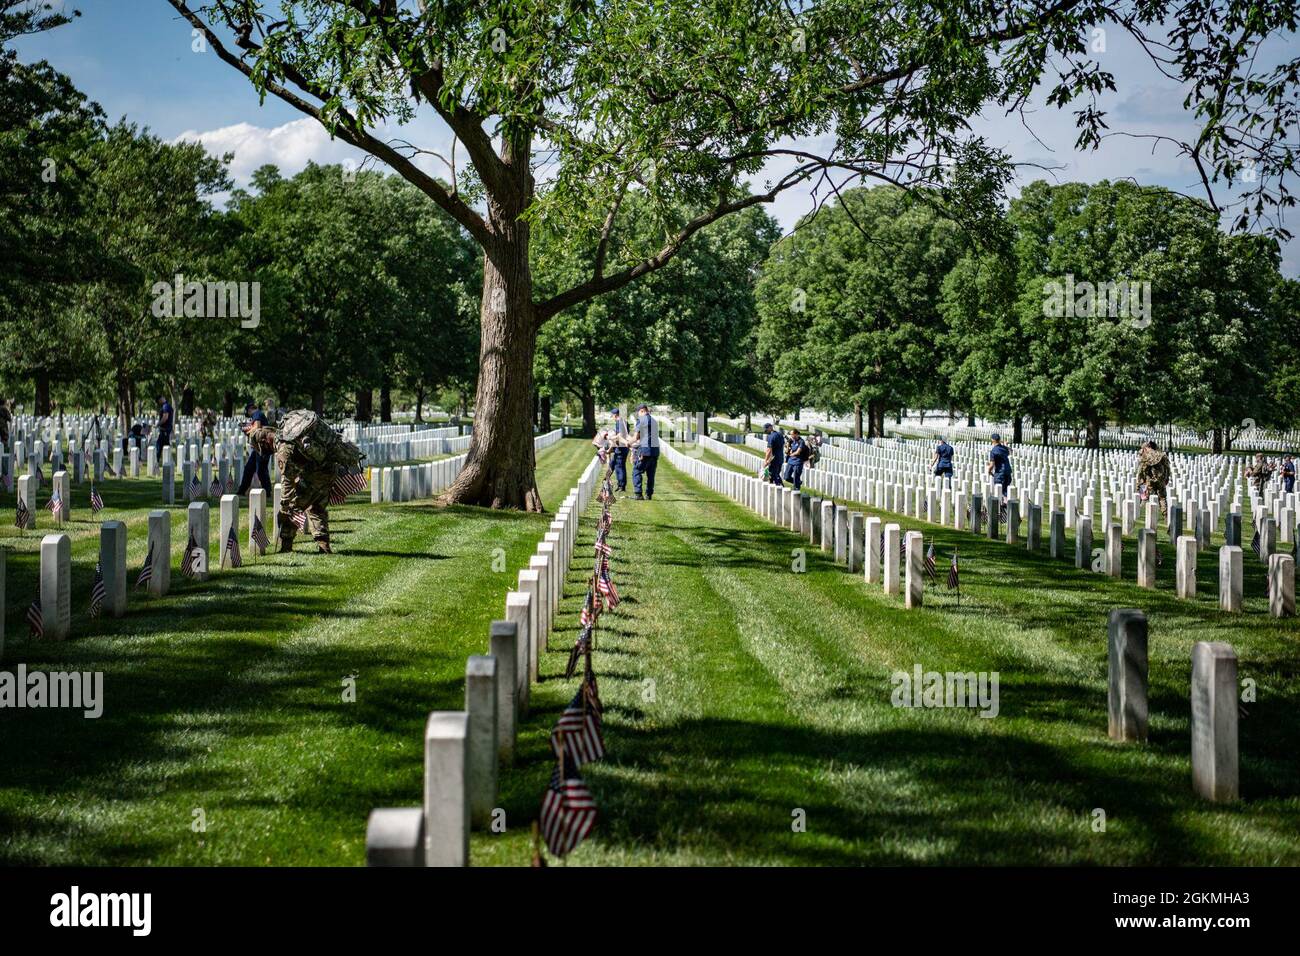 Les soldats de l'armée américaine 3d U.S. Infantry Regiment (The Old Guard), ainsi que les membres de service de toutes les branches de service des forces armées, placent plus de 265,000 drapeaux américains sur chaque tombe, colonne de cour de columbarium et colonne murale de niche dans le cadre de Flags-in au cimetière national d'Arlington, Arlington, Virginie, le 27 mai 2021. Depuis plus de 50 ans, les soldats de la vieille garde honorent les héros militaires tombés de notre pays en plaçant des drapeaux américains sur les tombes des militaires enterrés au cimetière national d'Arlington et au cimetière national des soldats et des aviateurs des États-Unis juste avant t Banque D'Images